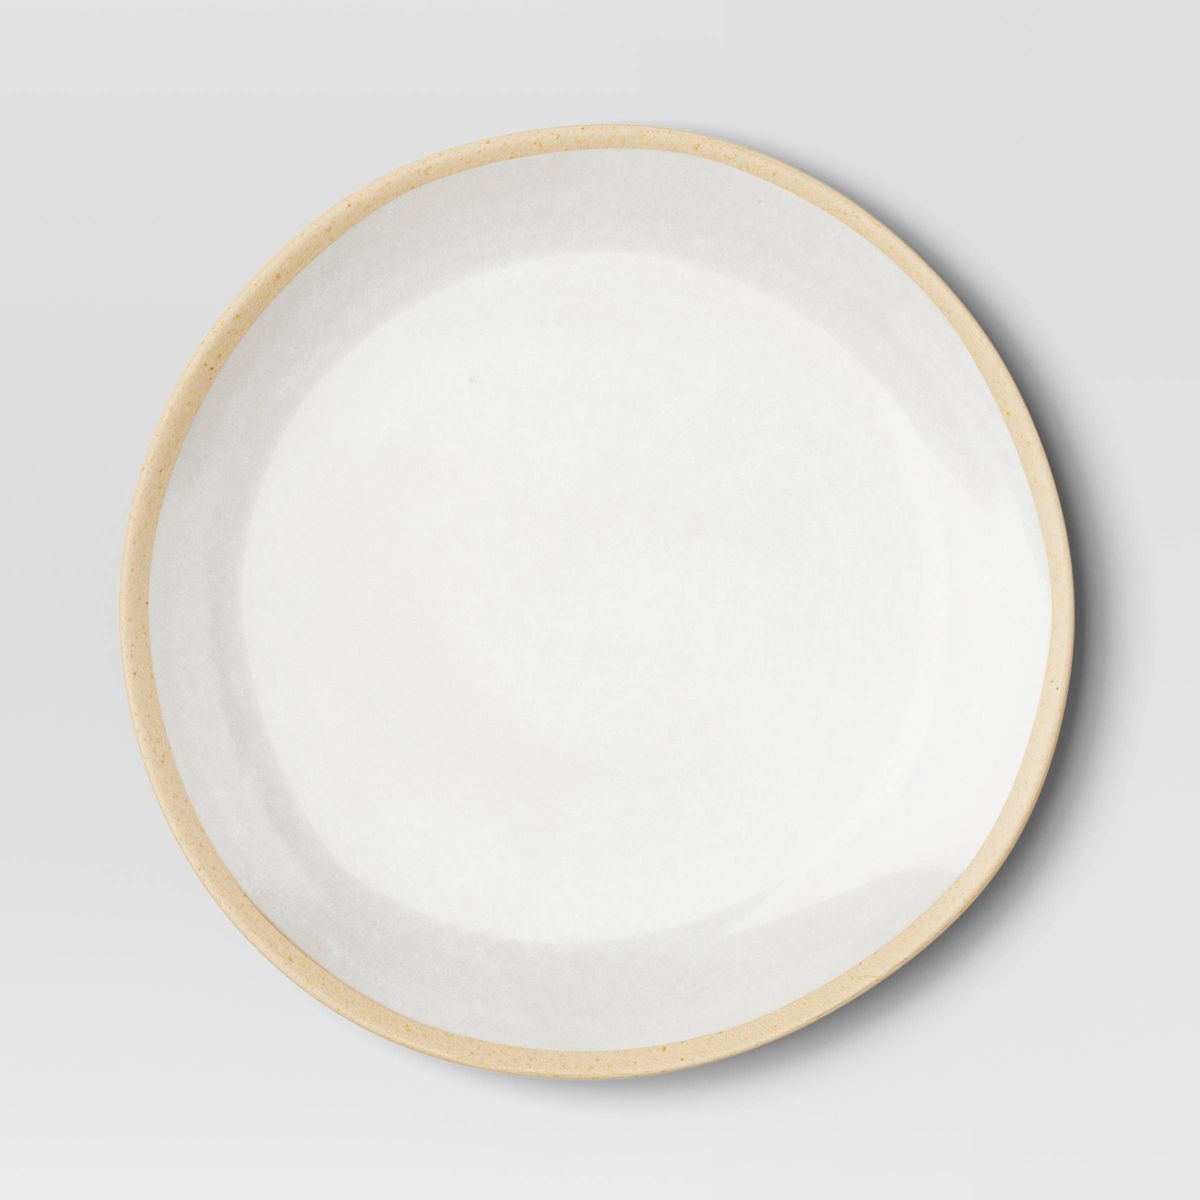 10.5" Melamine Dinner Plate Ivory - Threshold™ | Target